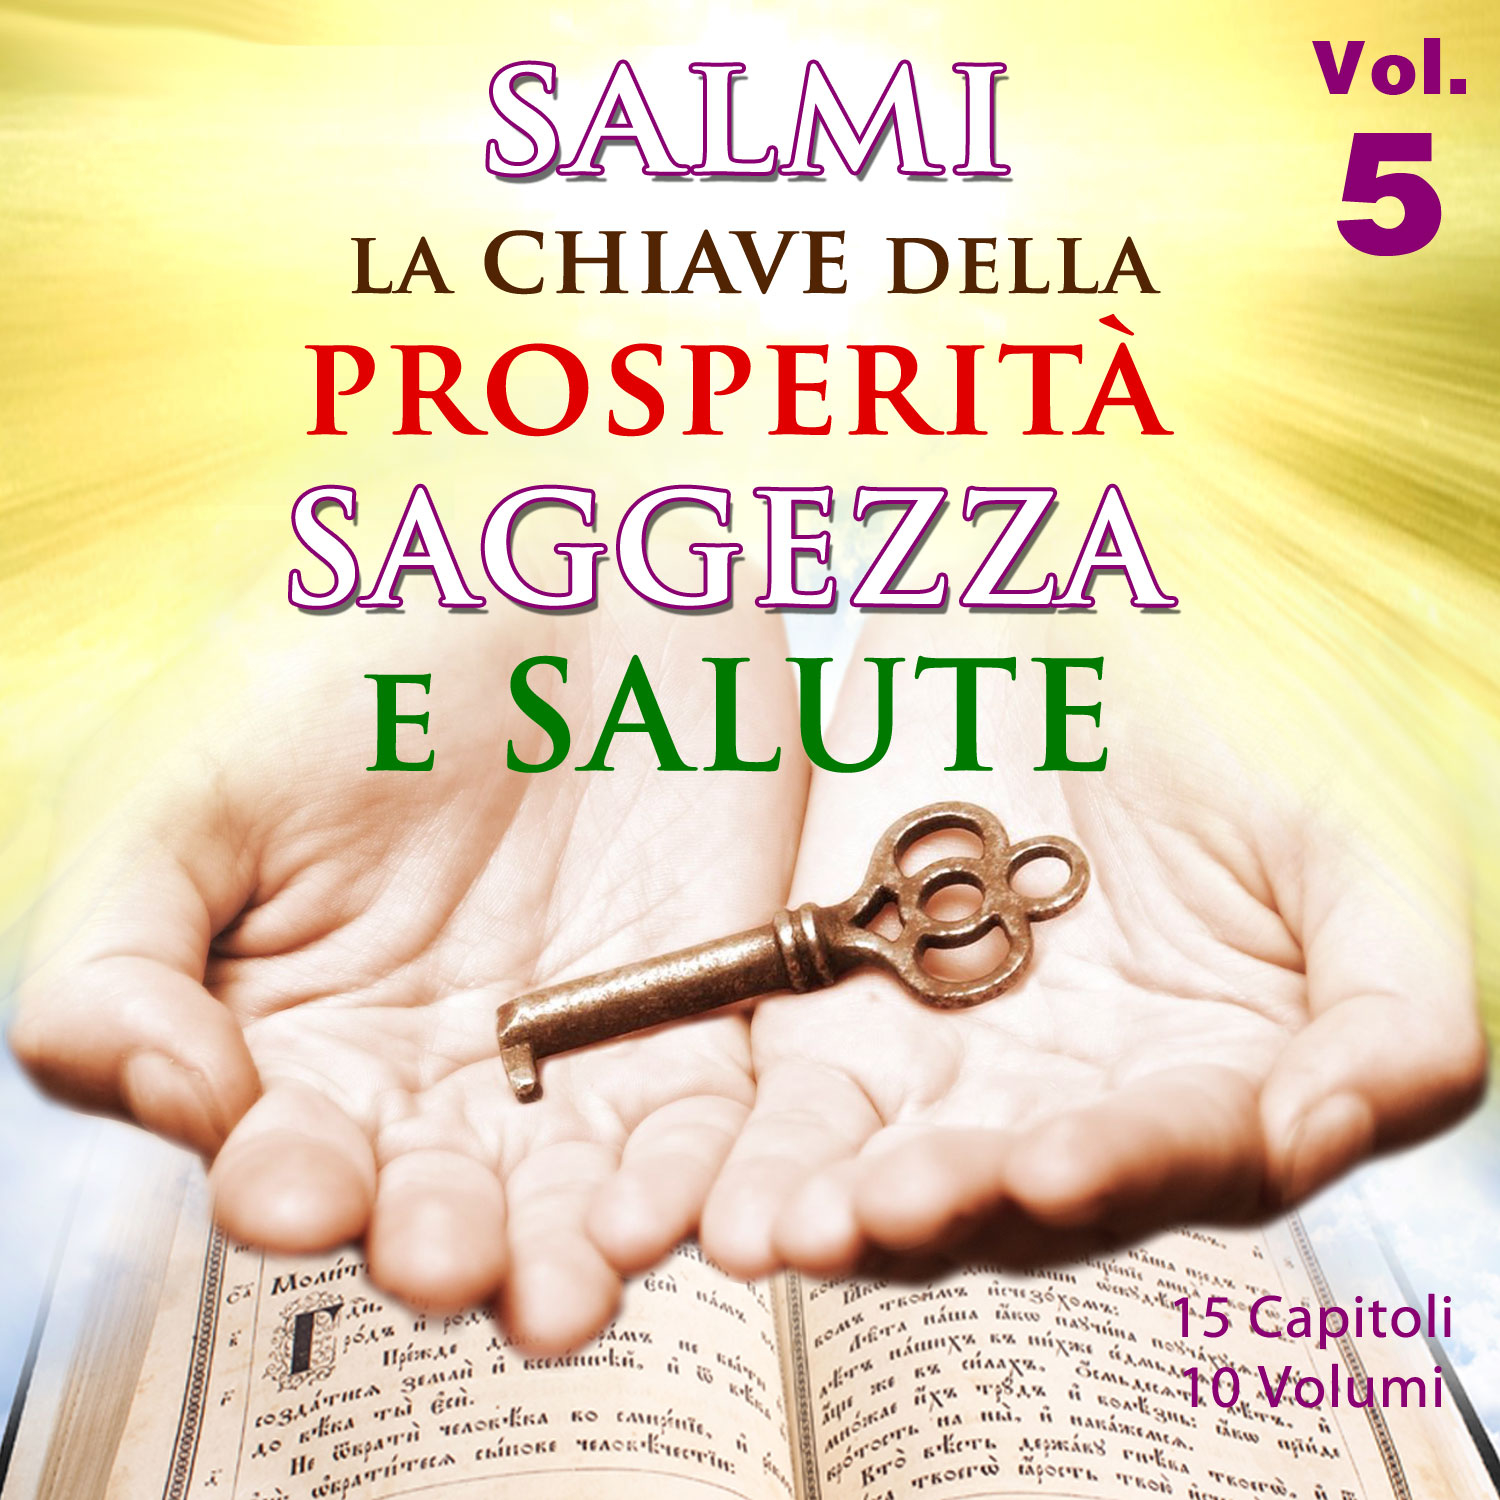 Salmi la Chiave della Prosperita, Saggezza e Salute, Vol. 5